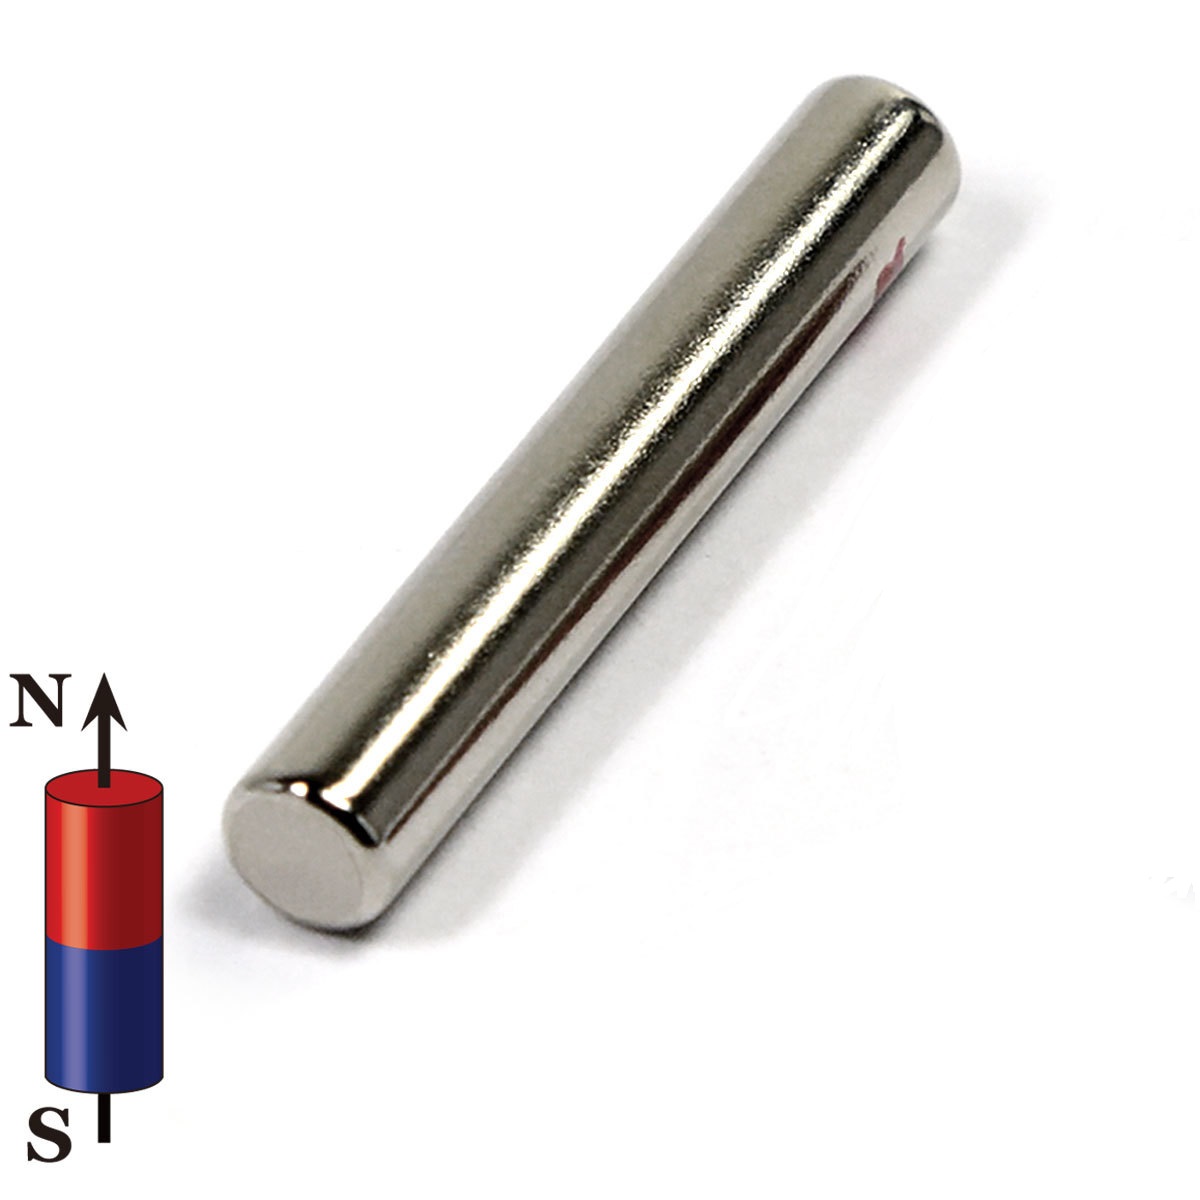 Supermagnete starke Magnete aus Neodym im Magnet-Shop kaufen - Magnosphere